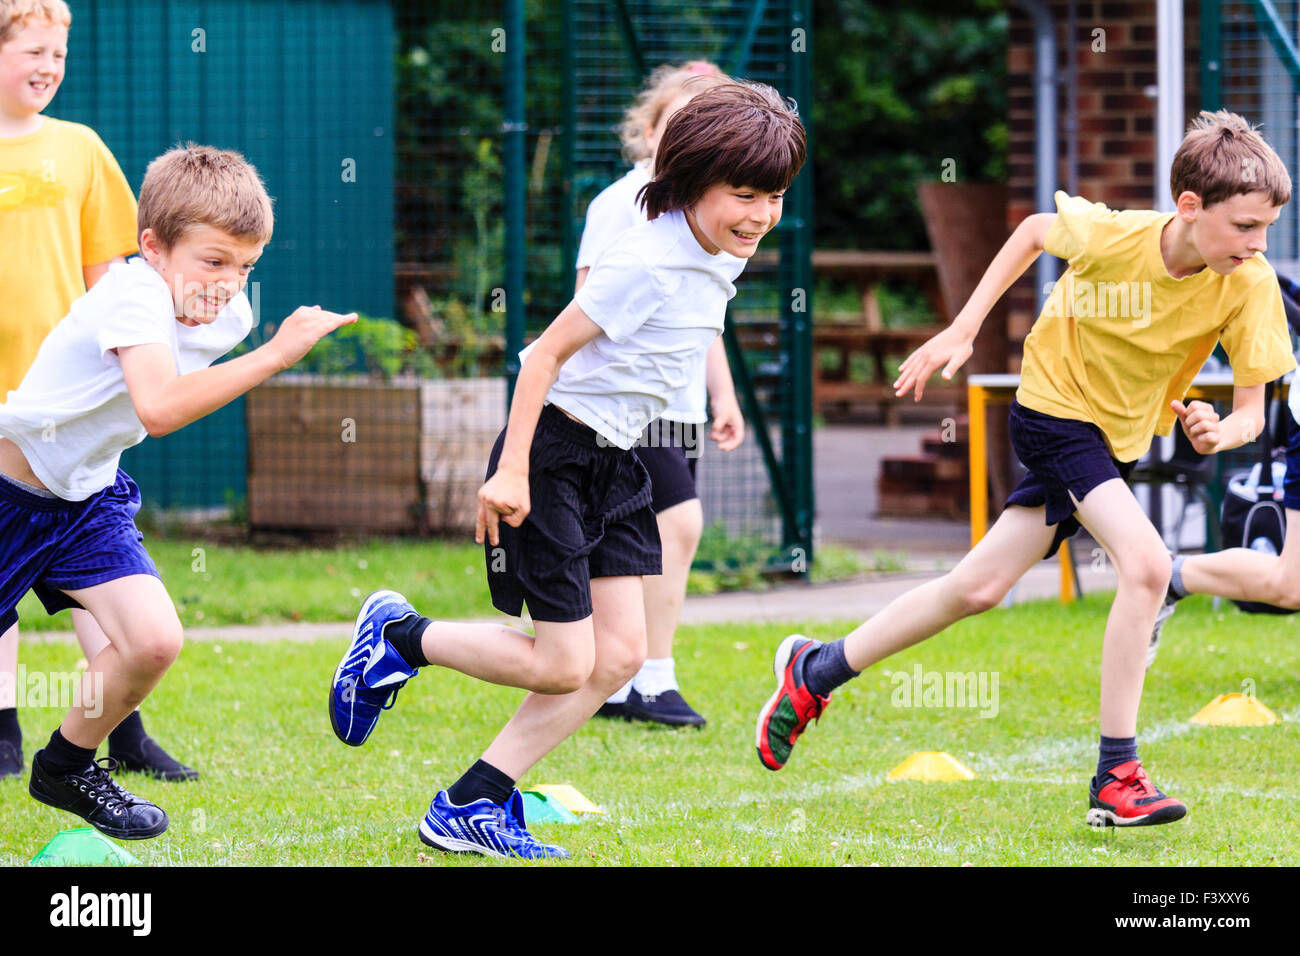 Inglaterra, escolares, niños, 10-11 años, corriendo la carrera sobre pista de césped al aire libre. En pantalones cortos y camiseta, mitad vista lateral de tres muchachos en ejecución. Foto de stock